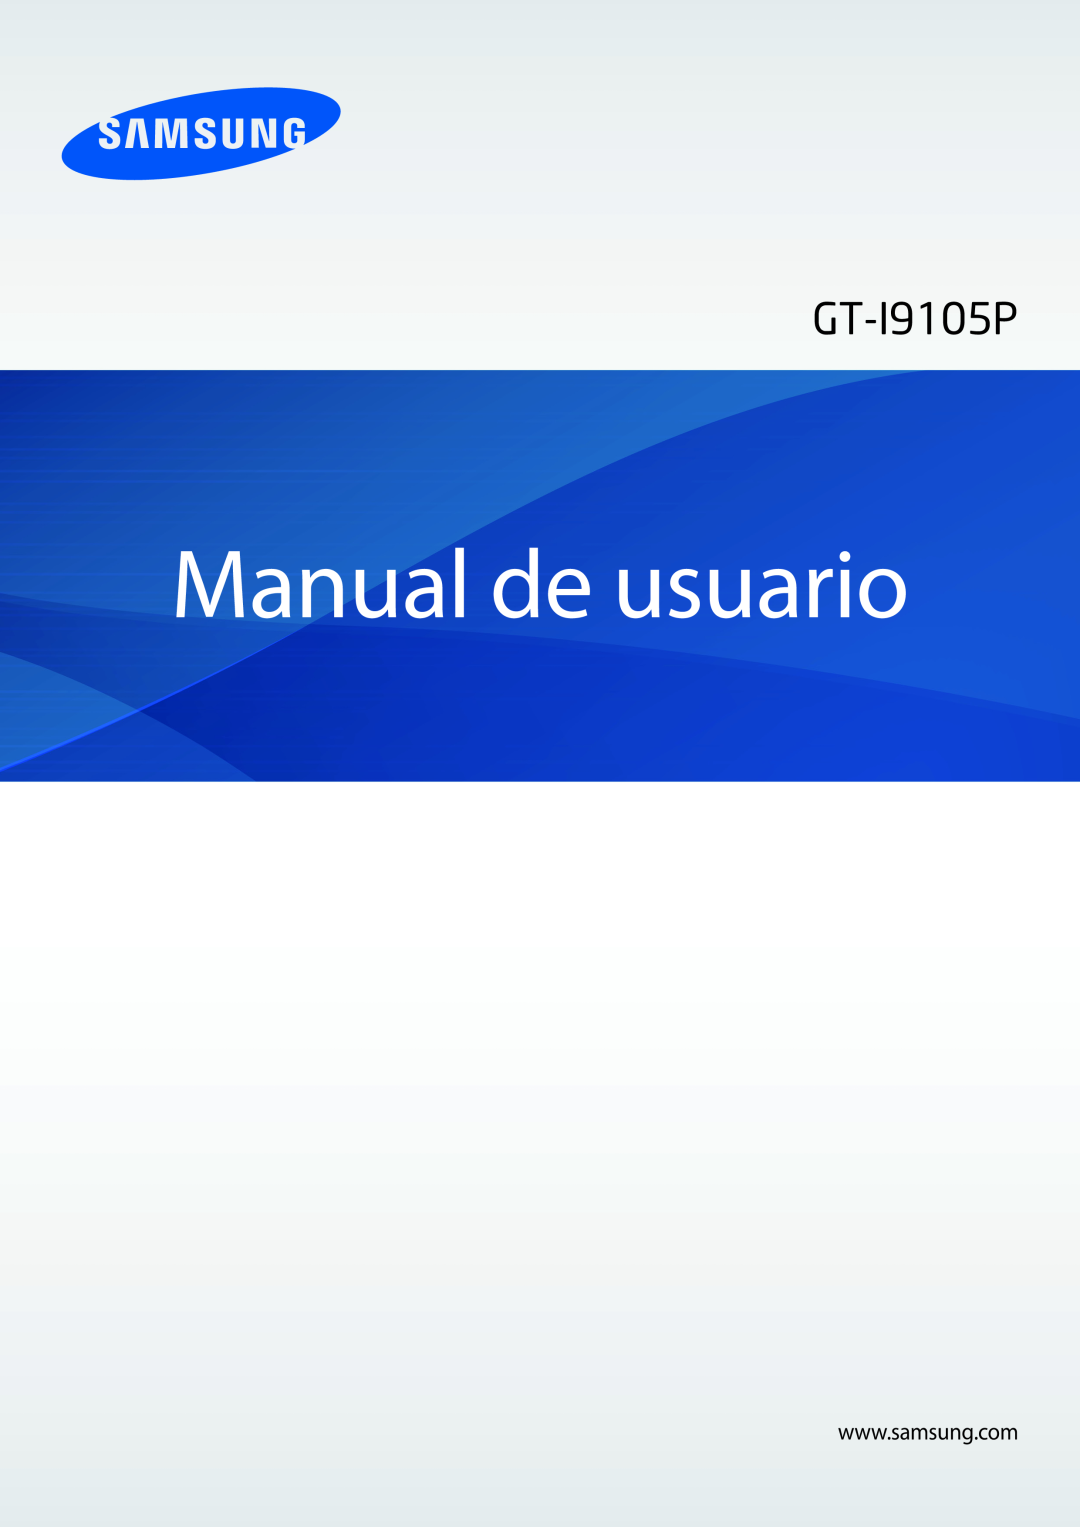 Samsung GT-I9105UANDBT, GT-I9105UANTPH, GT-I9105CWNDBT, GT-I9105CWNITV, GT-I9105UANXEO manual Manual de usuario, GT-I9105P 